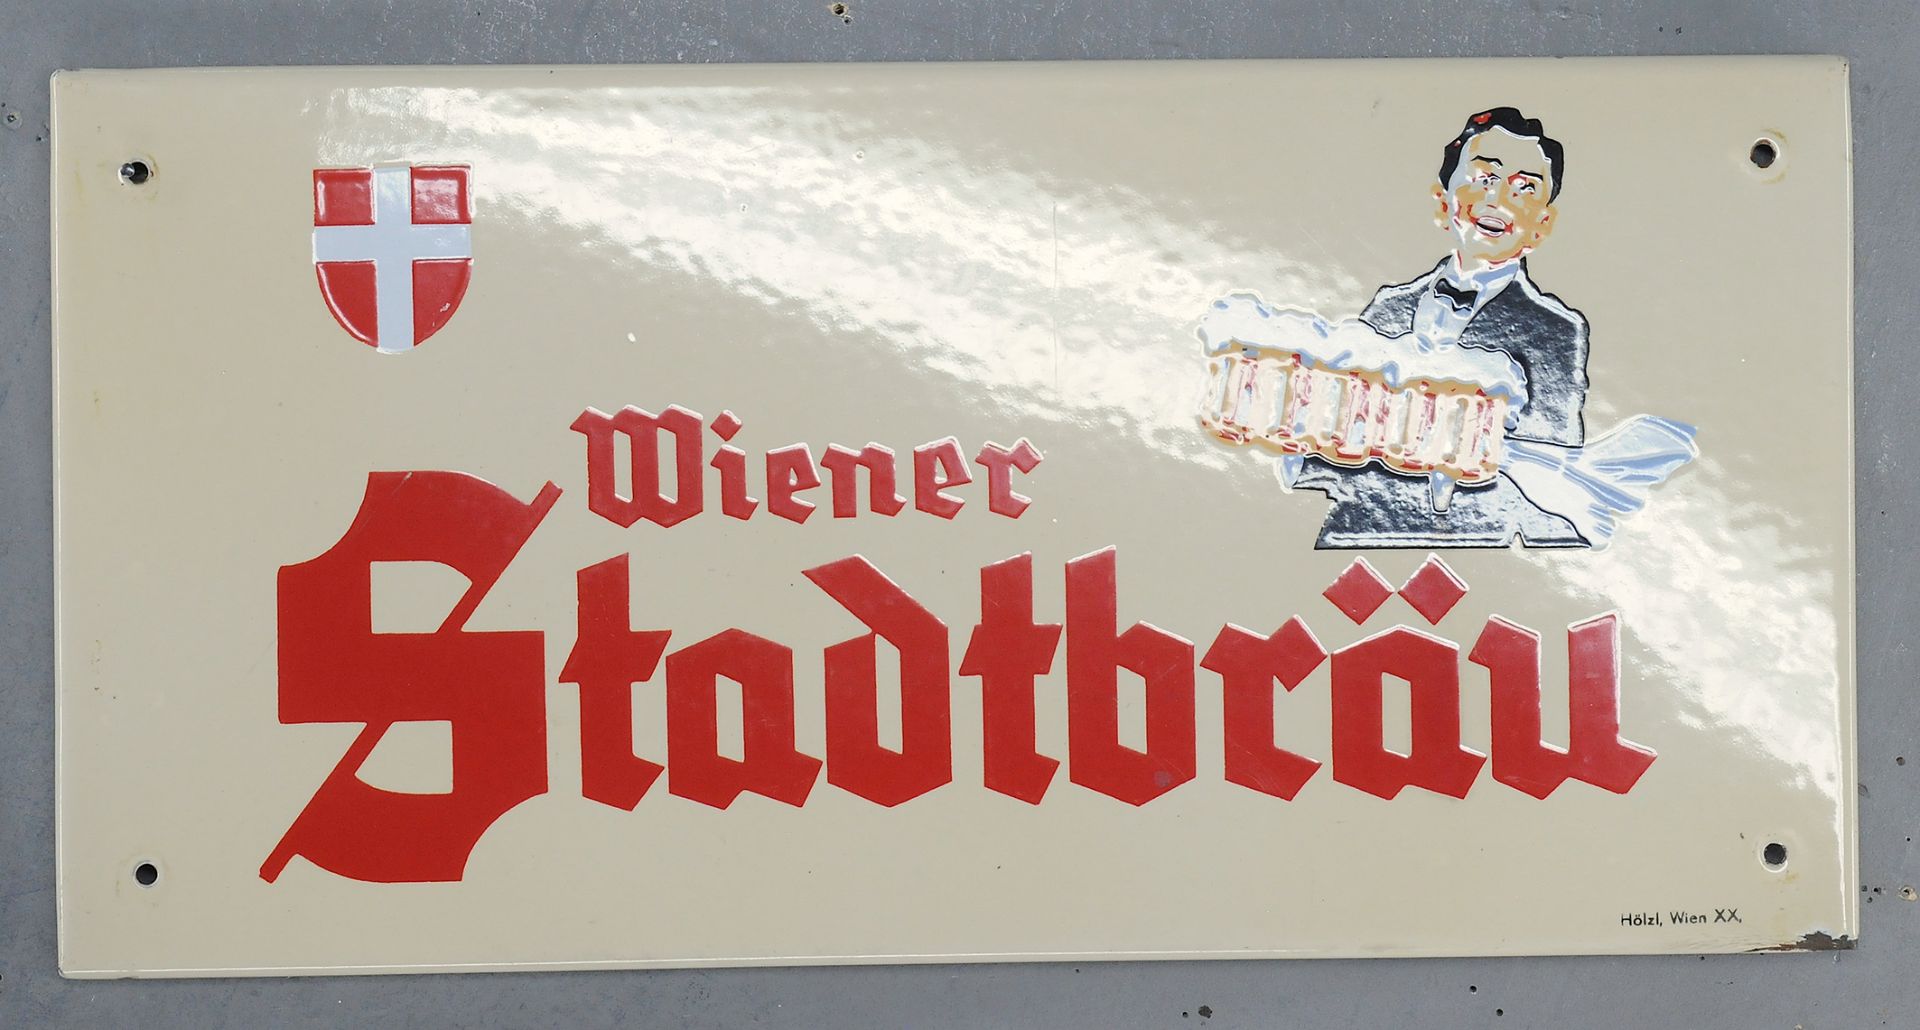 Wiener Stadtbräu - Image 3 of 3